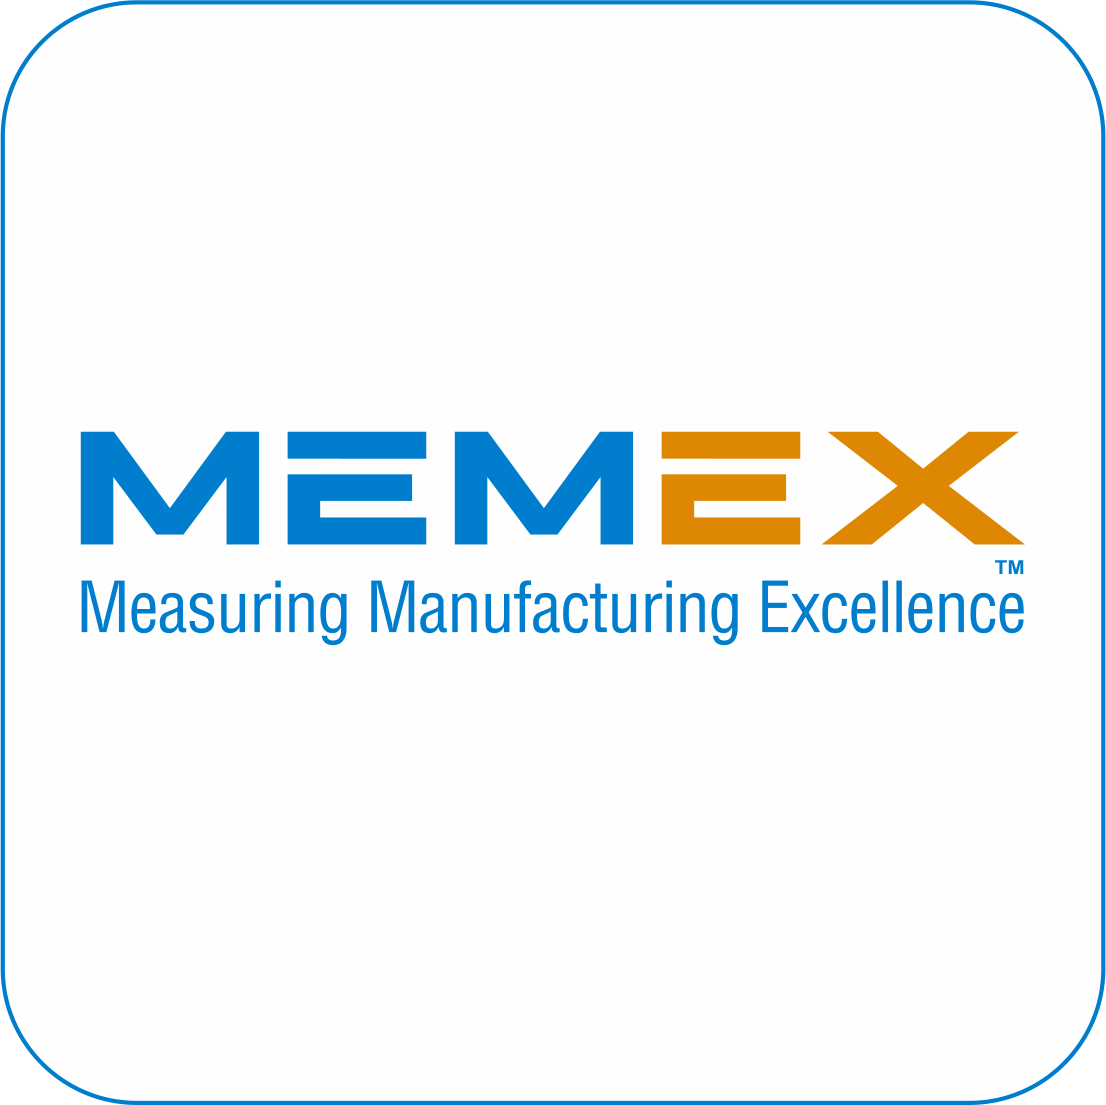 Memex MME Icon logo 2 colour white interior TM